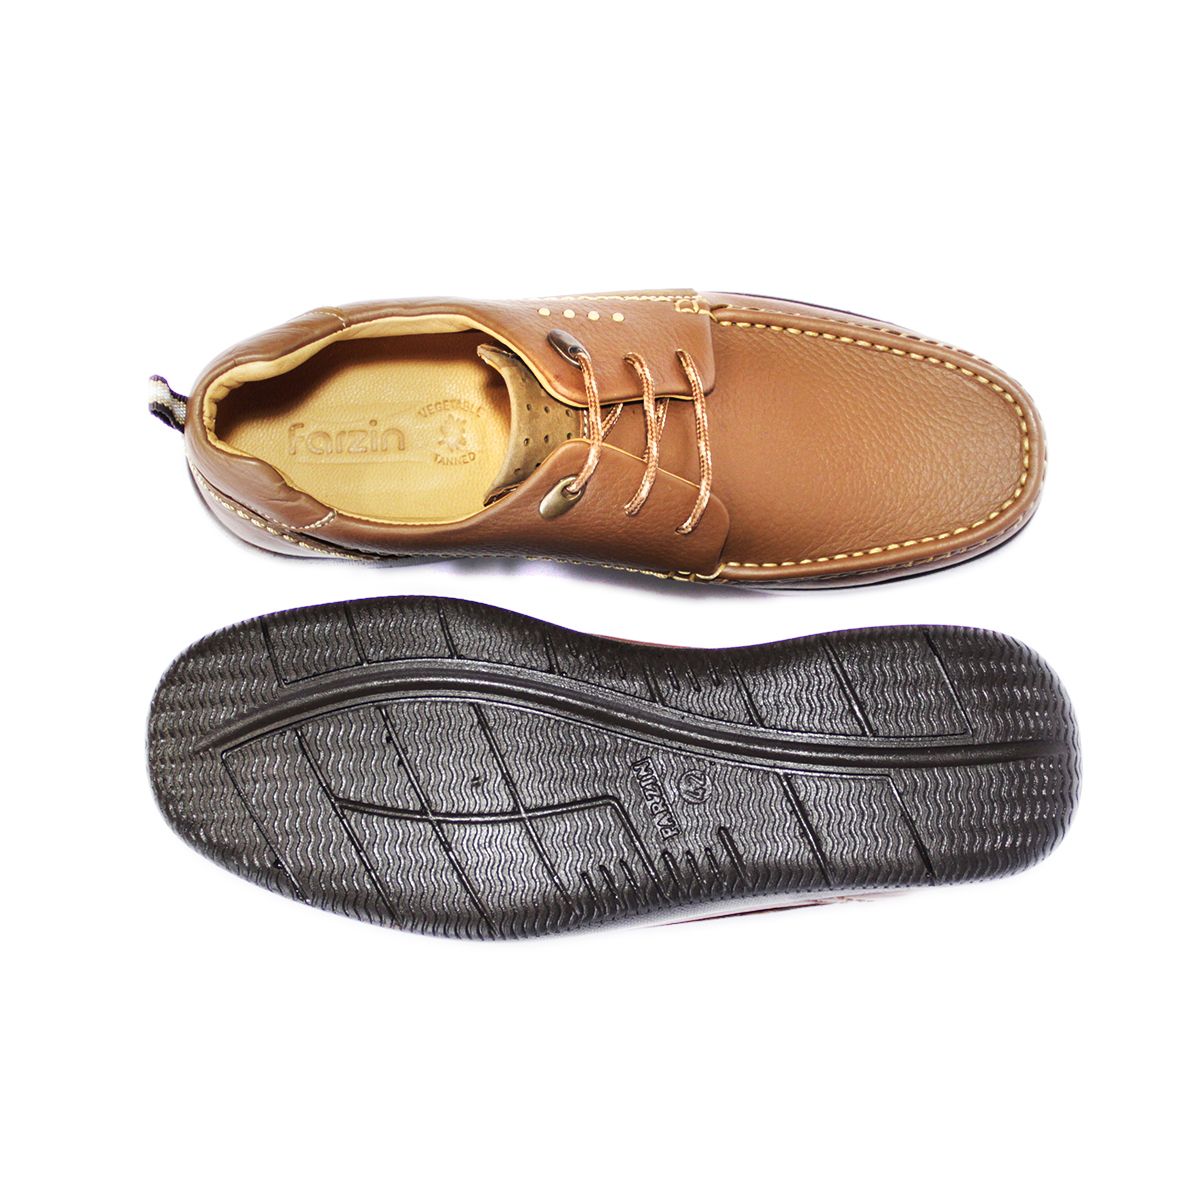 کفش روزمره مردانه فرزین کد kpbw 018 رنگ گردویی -  - 3